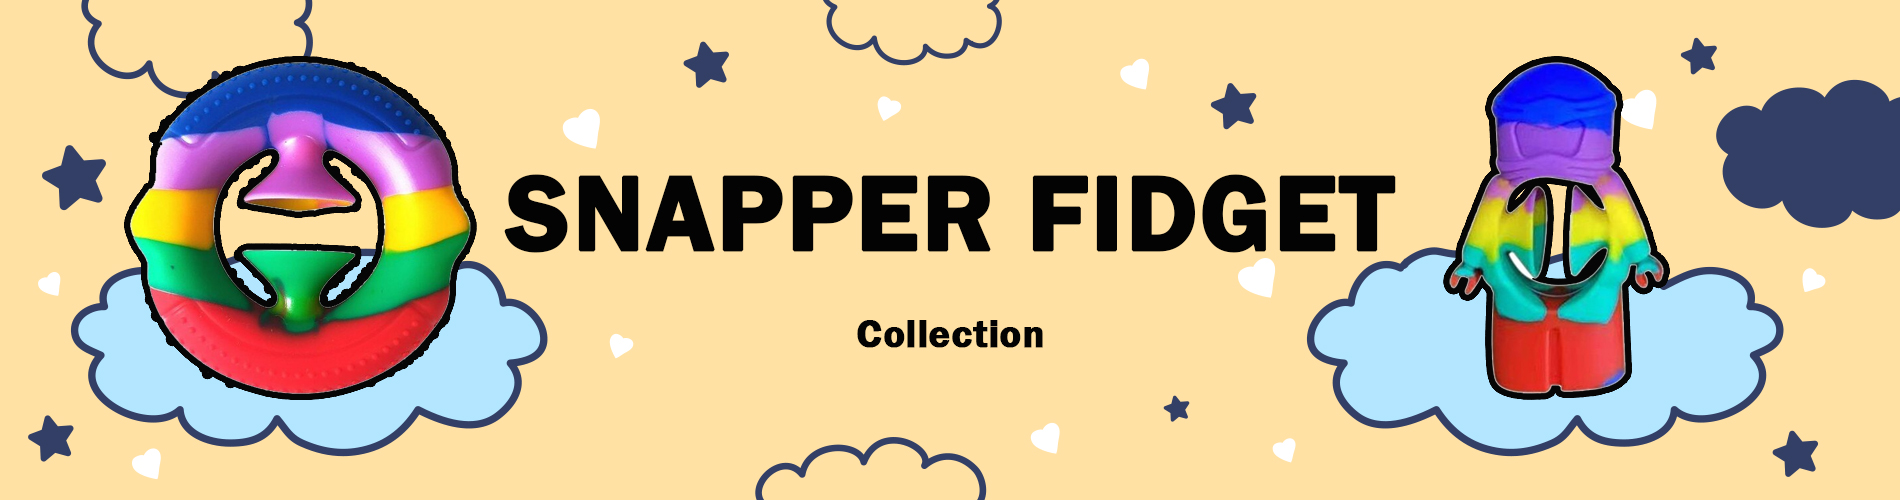 snapper fidget - Popping Fidgets